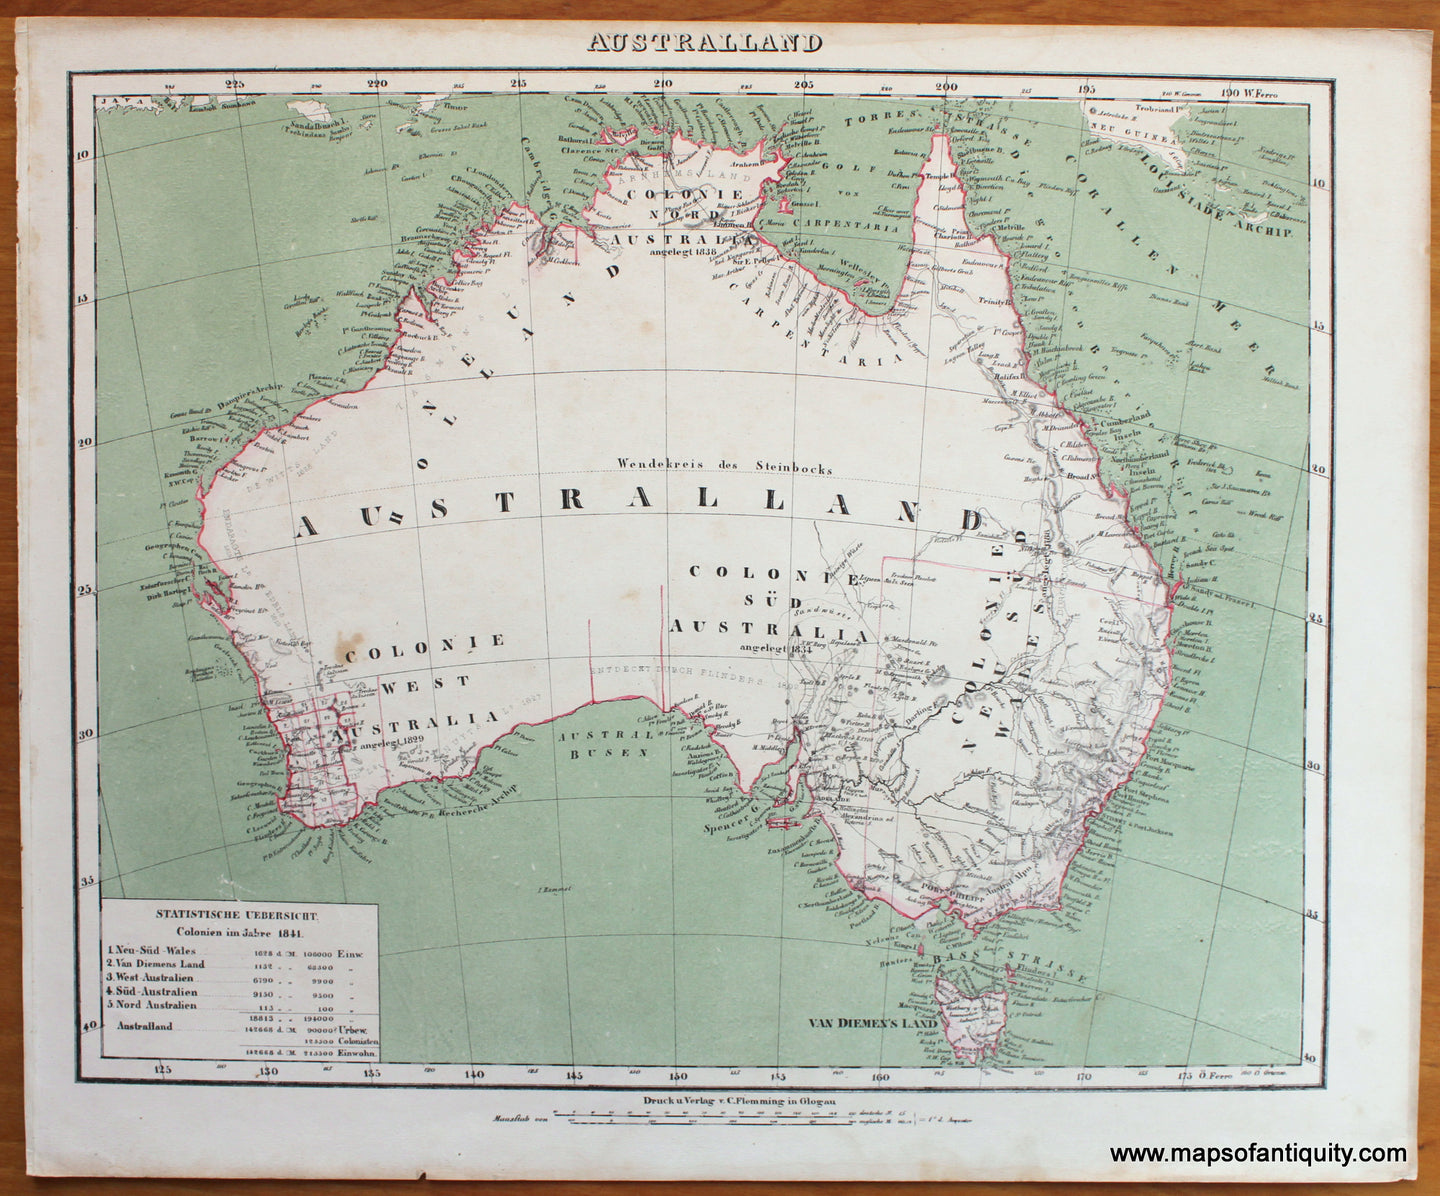 Antique-Map-Australia-Australland-Flemming-1845-1840s-1800s